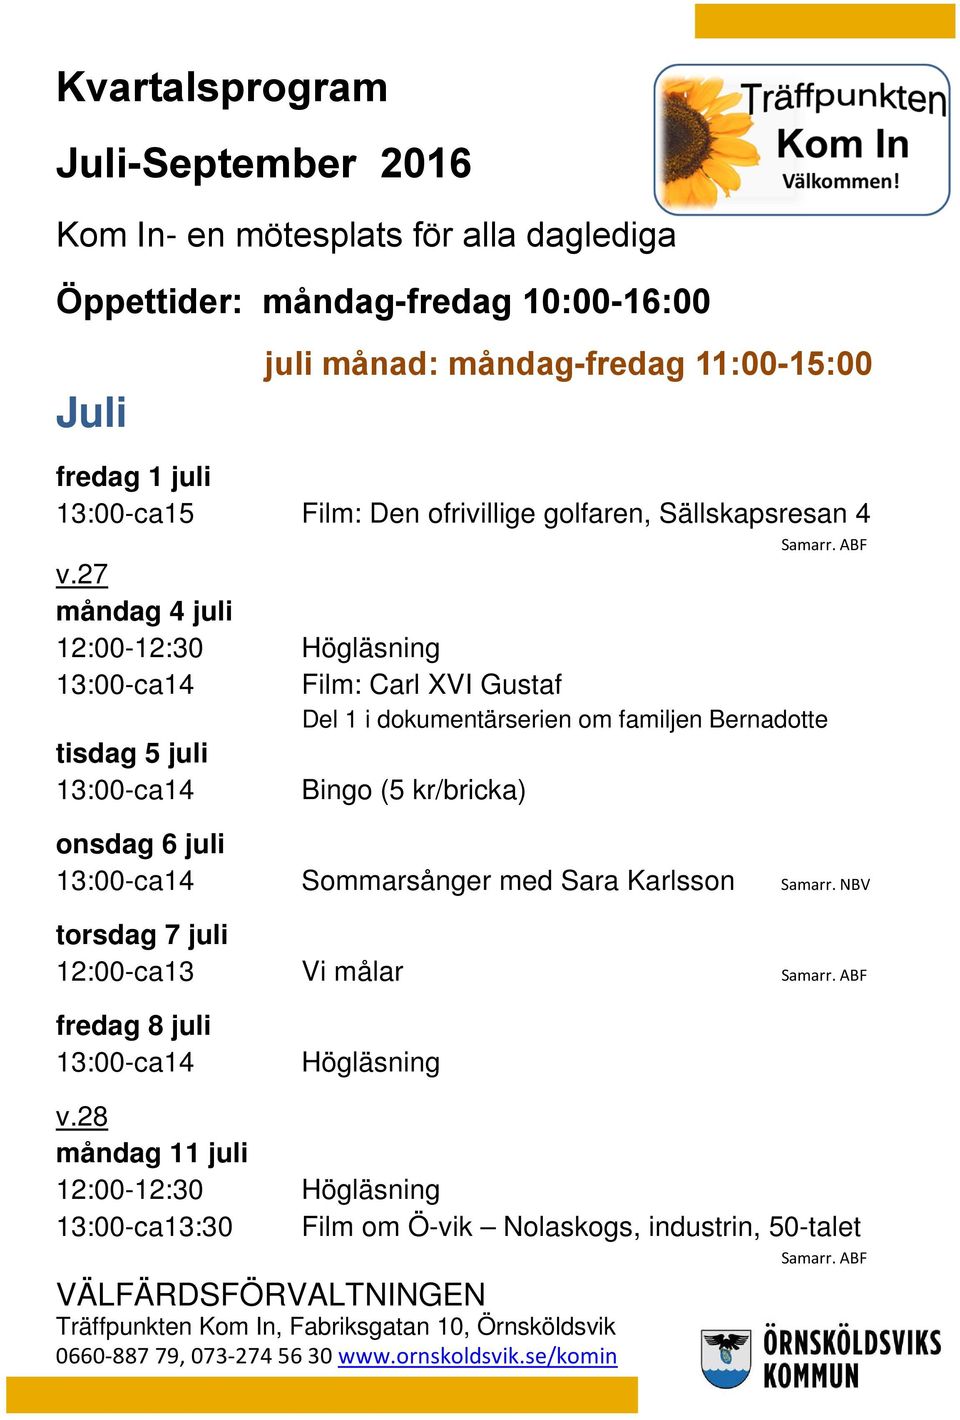 27 måndag 4 juli 12:00-12:30 Högläsning tisdag 5 juli Film: Carl XVI Gustaf Del 1 i dokumentärserien om familjen Bernadotte onsdag 6 juli